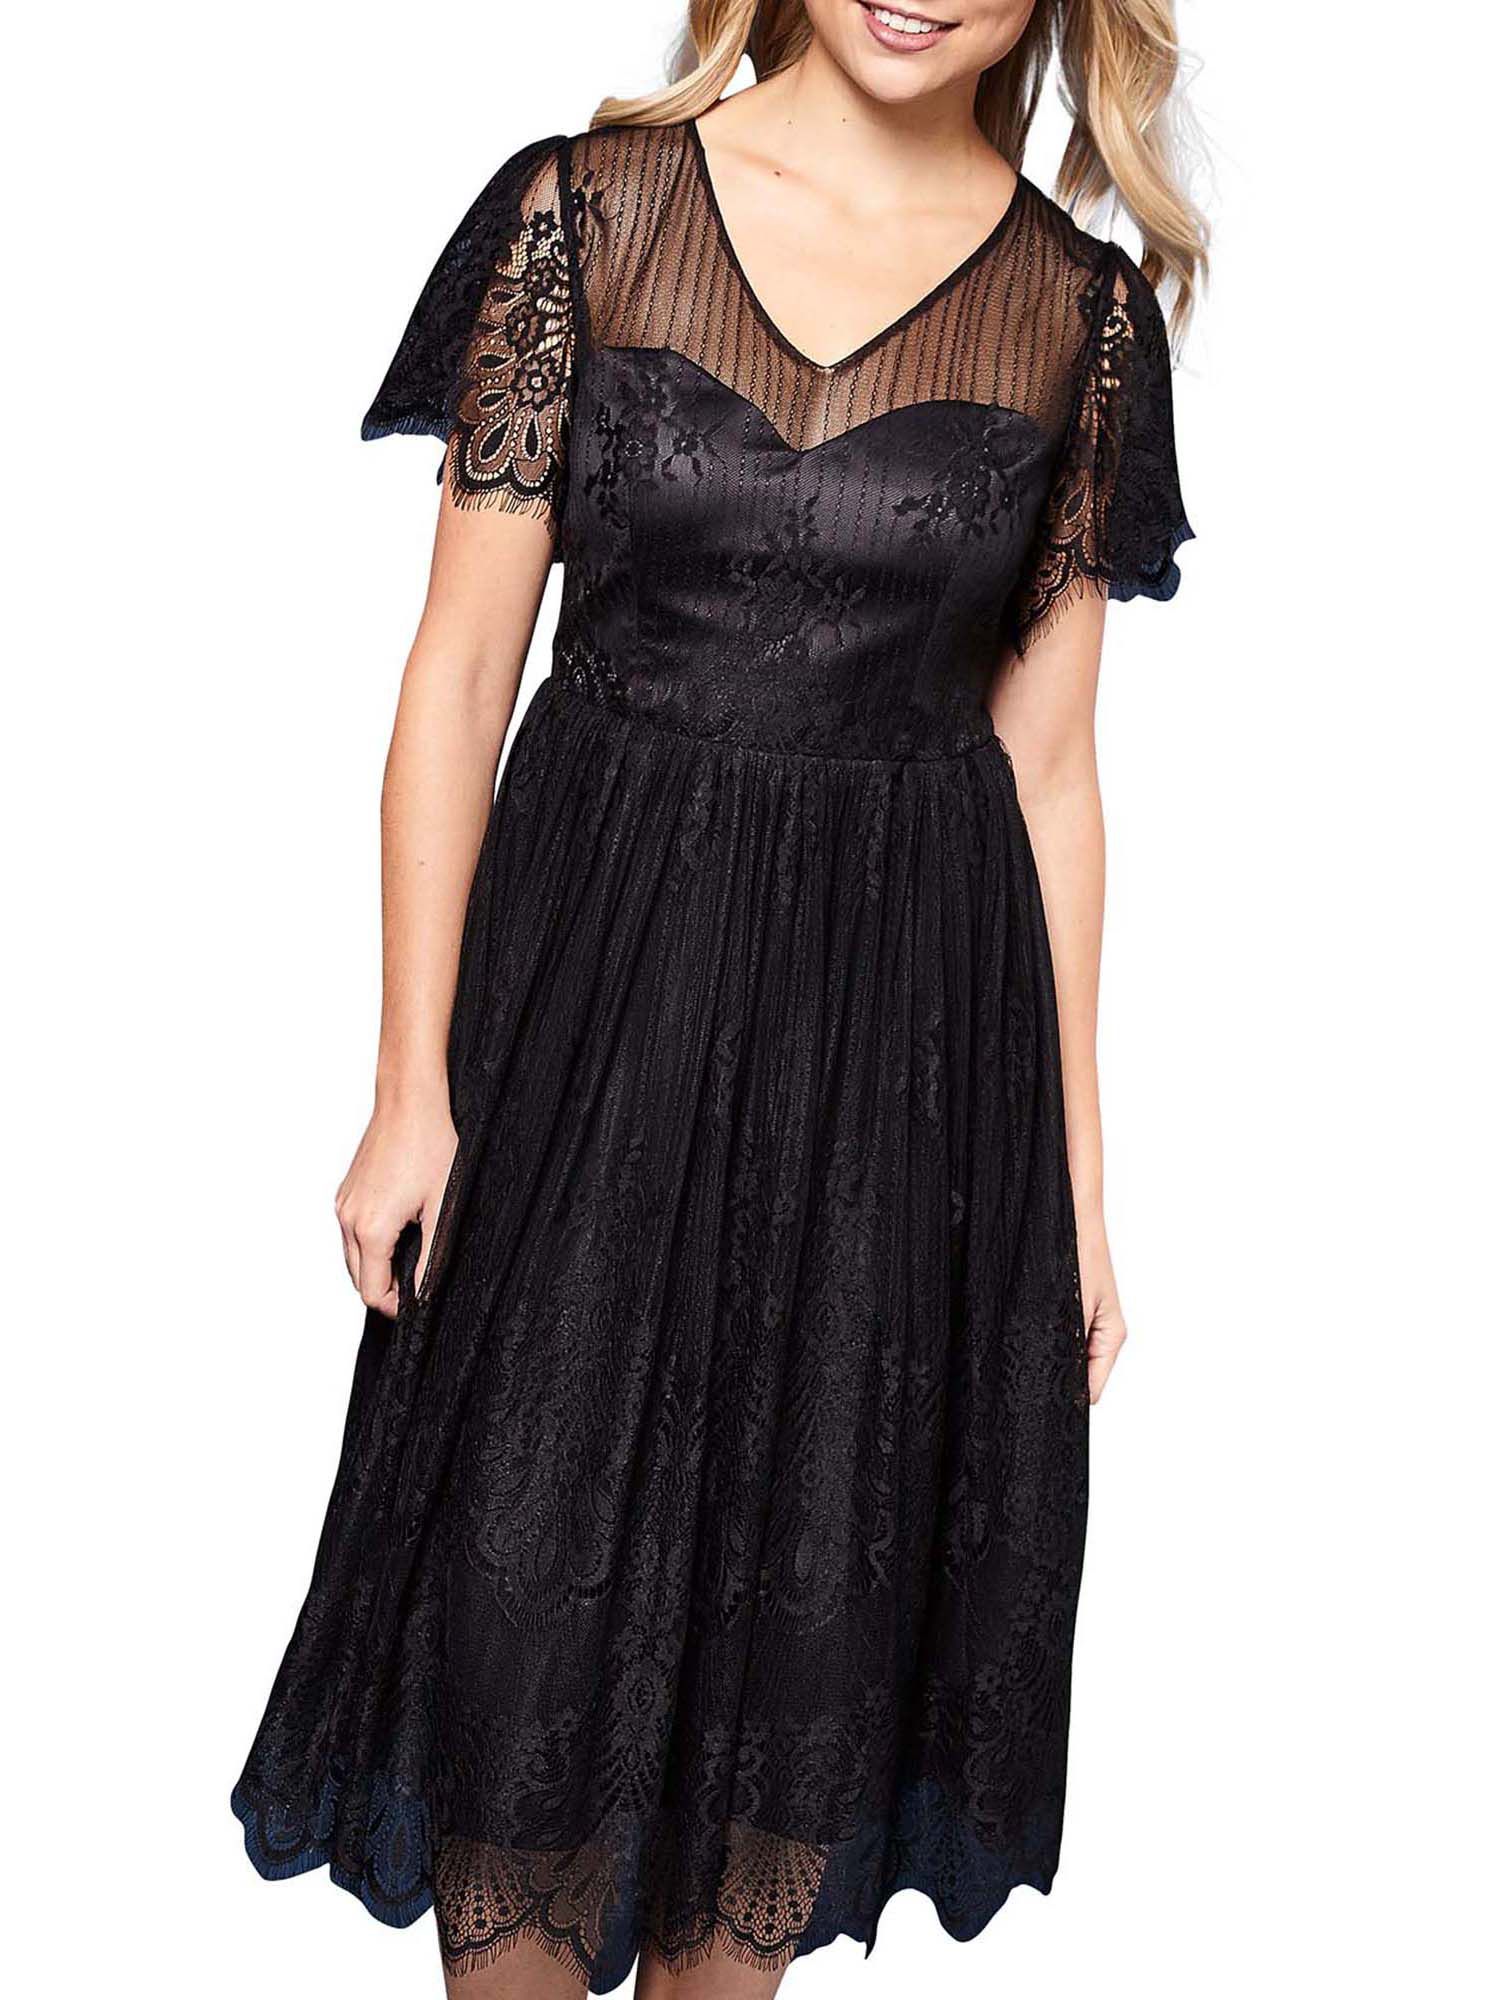 yumi black lace dress